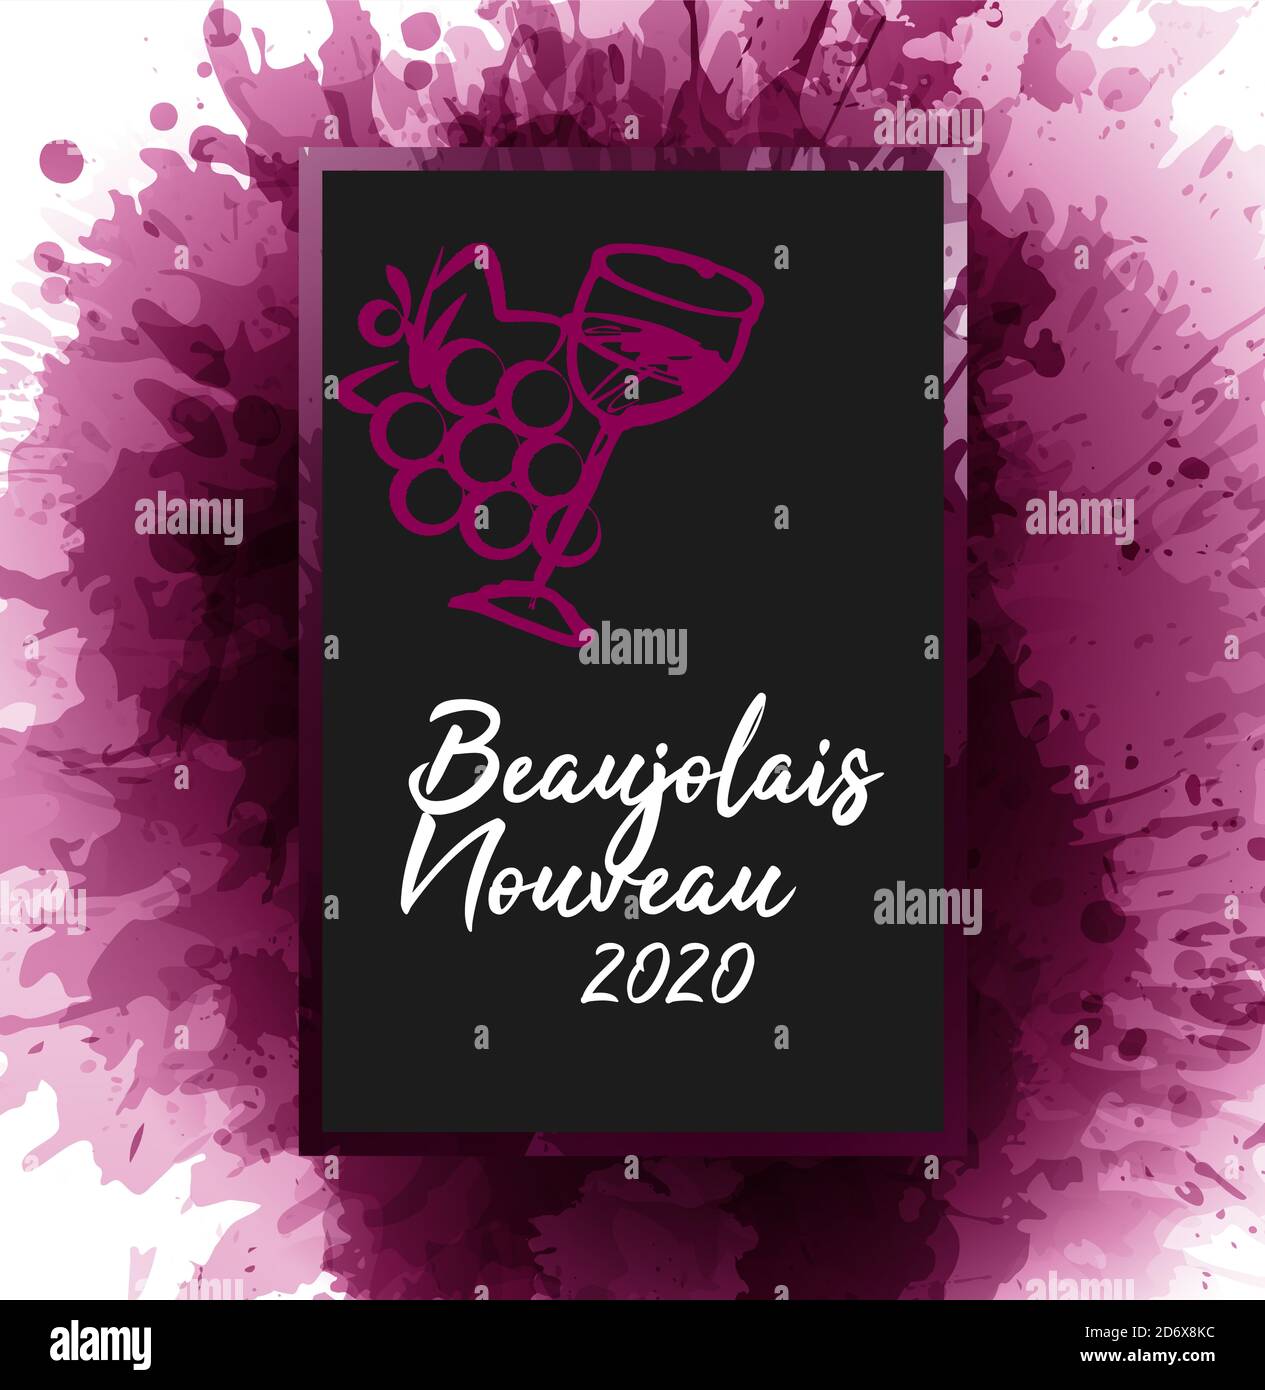 Lavagna con il testo francese 'Beaujolais nouveau 2020', nuovo Beaujolais 2020. Illustrazione del grappolo d'uva e del bicchiere di vino. Macchie di vino sul dorso Illustrazione Vettoriale